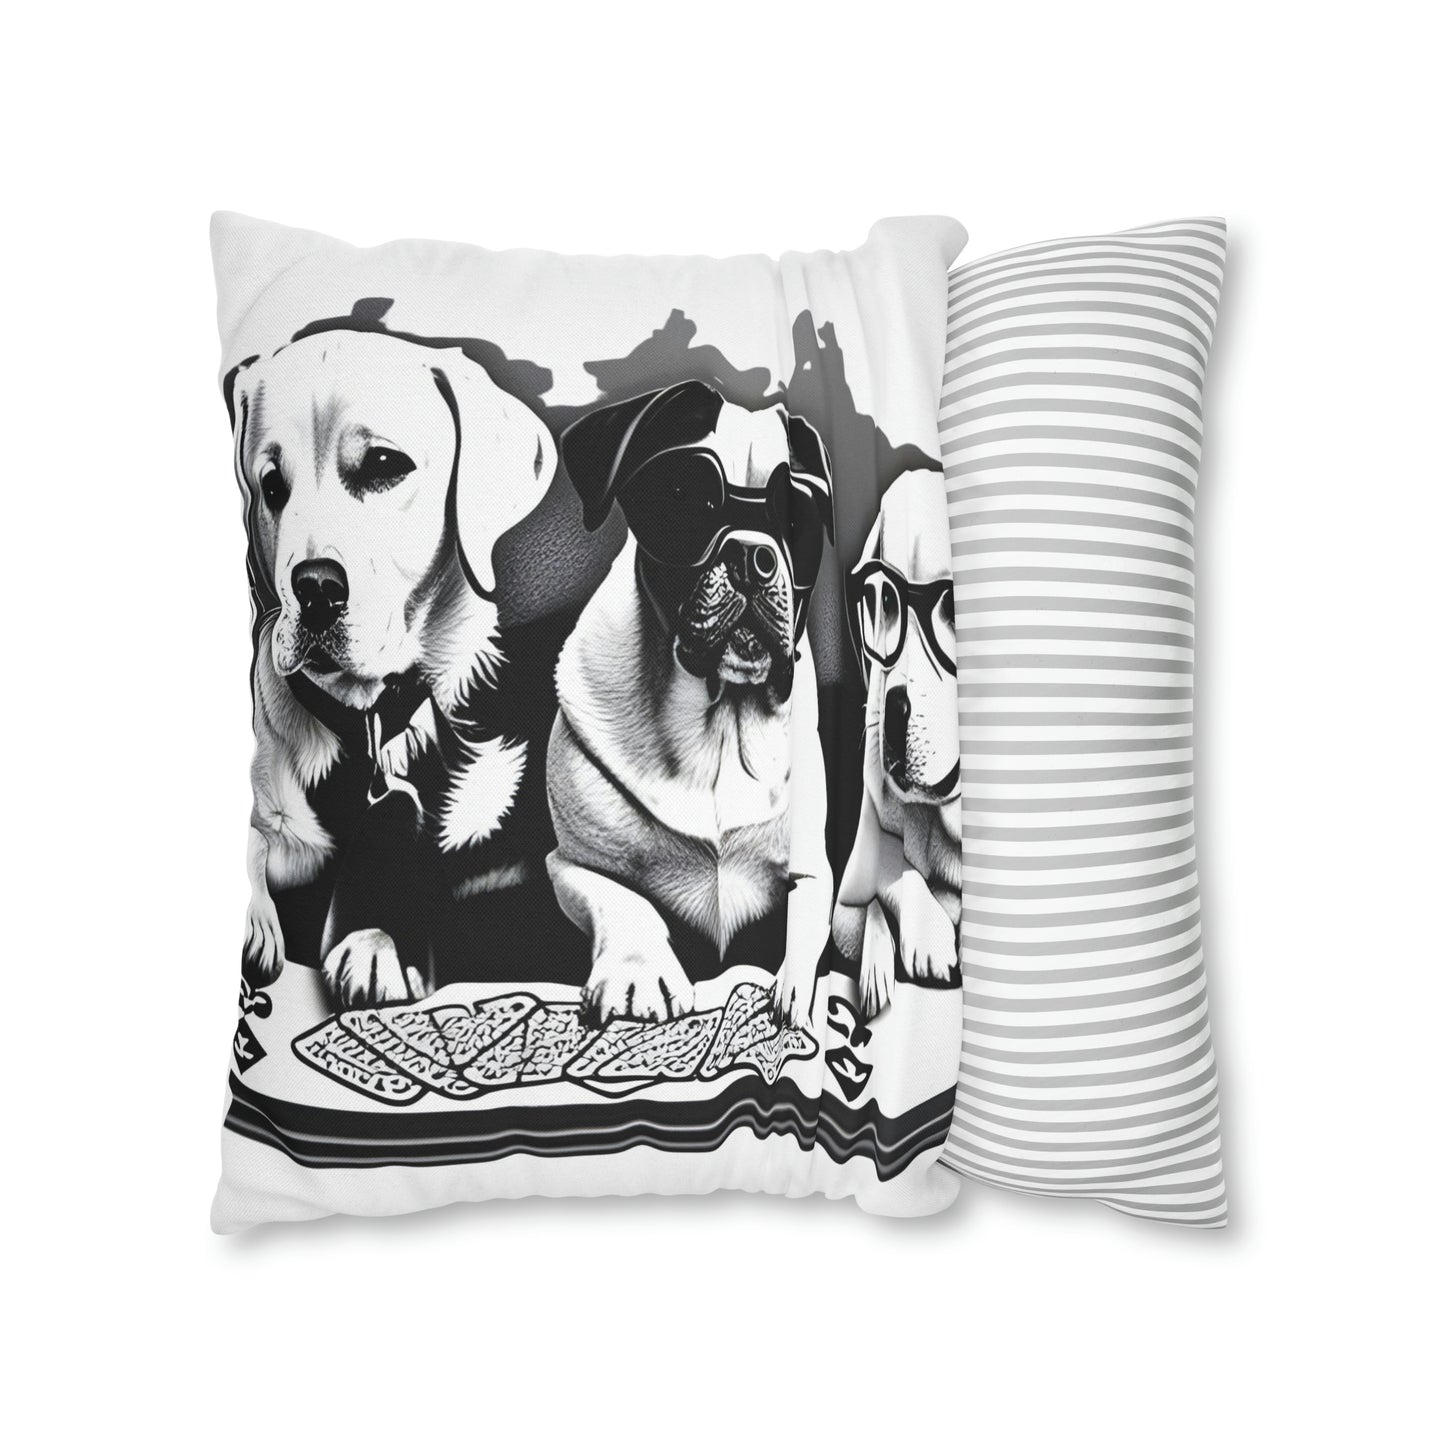 Scripture Spun Polyester Square Pillow | Spun Polyester Square Pillow Case | Dogs Playing card | Dog Décor pillow